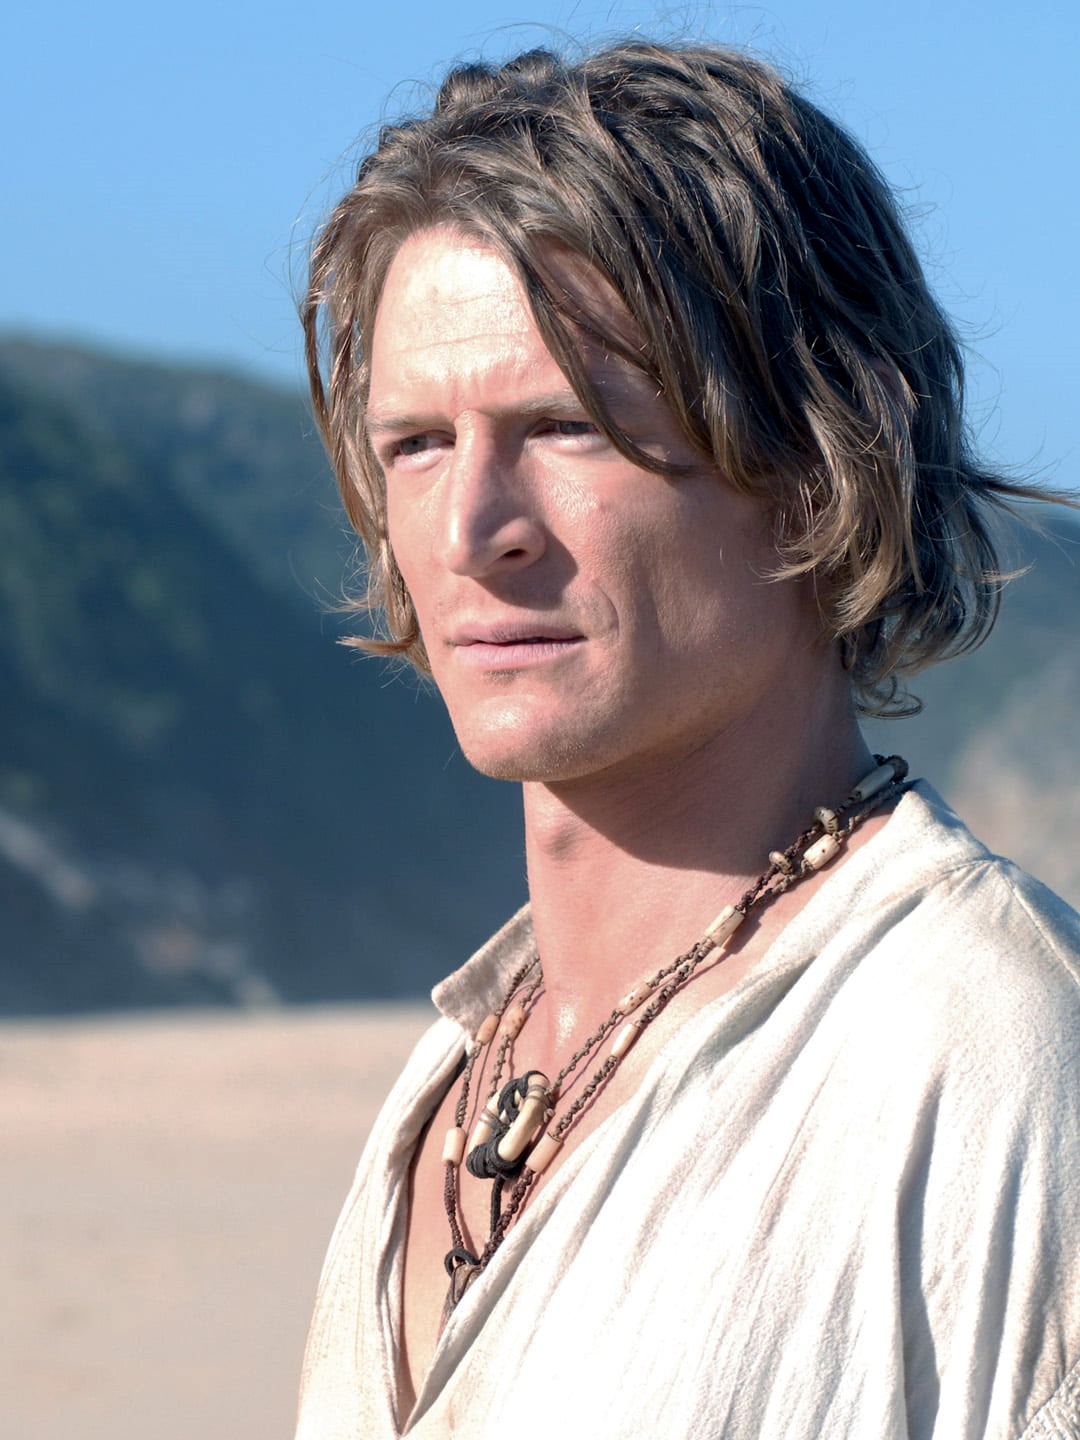 Philip Winchester in the role of Robinson Crusoe